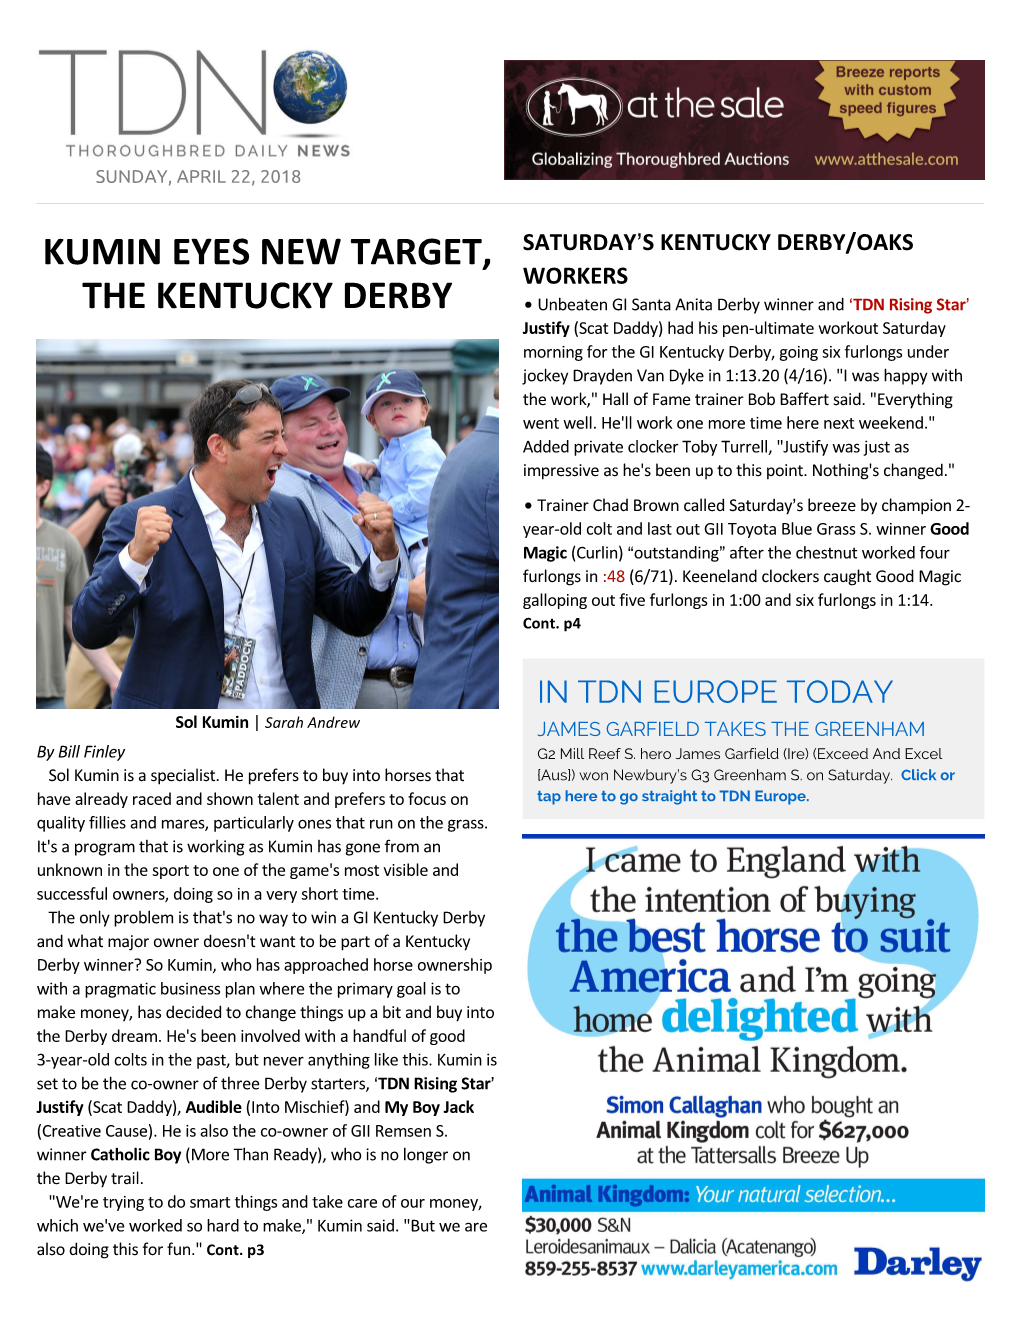 Kumin Eyes New Target, the Kentucky Derby